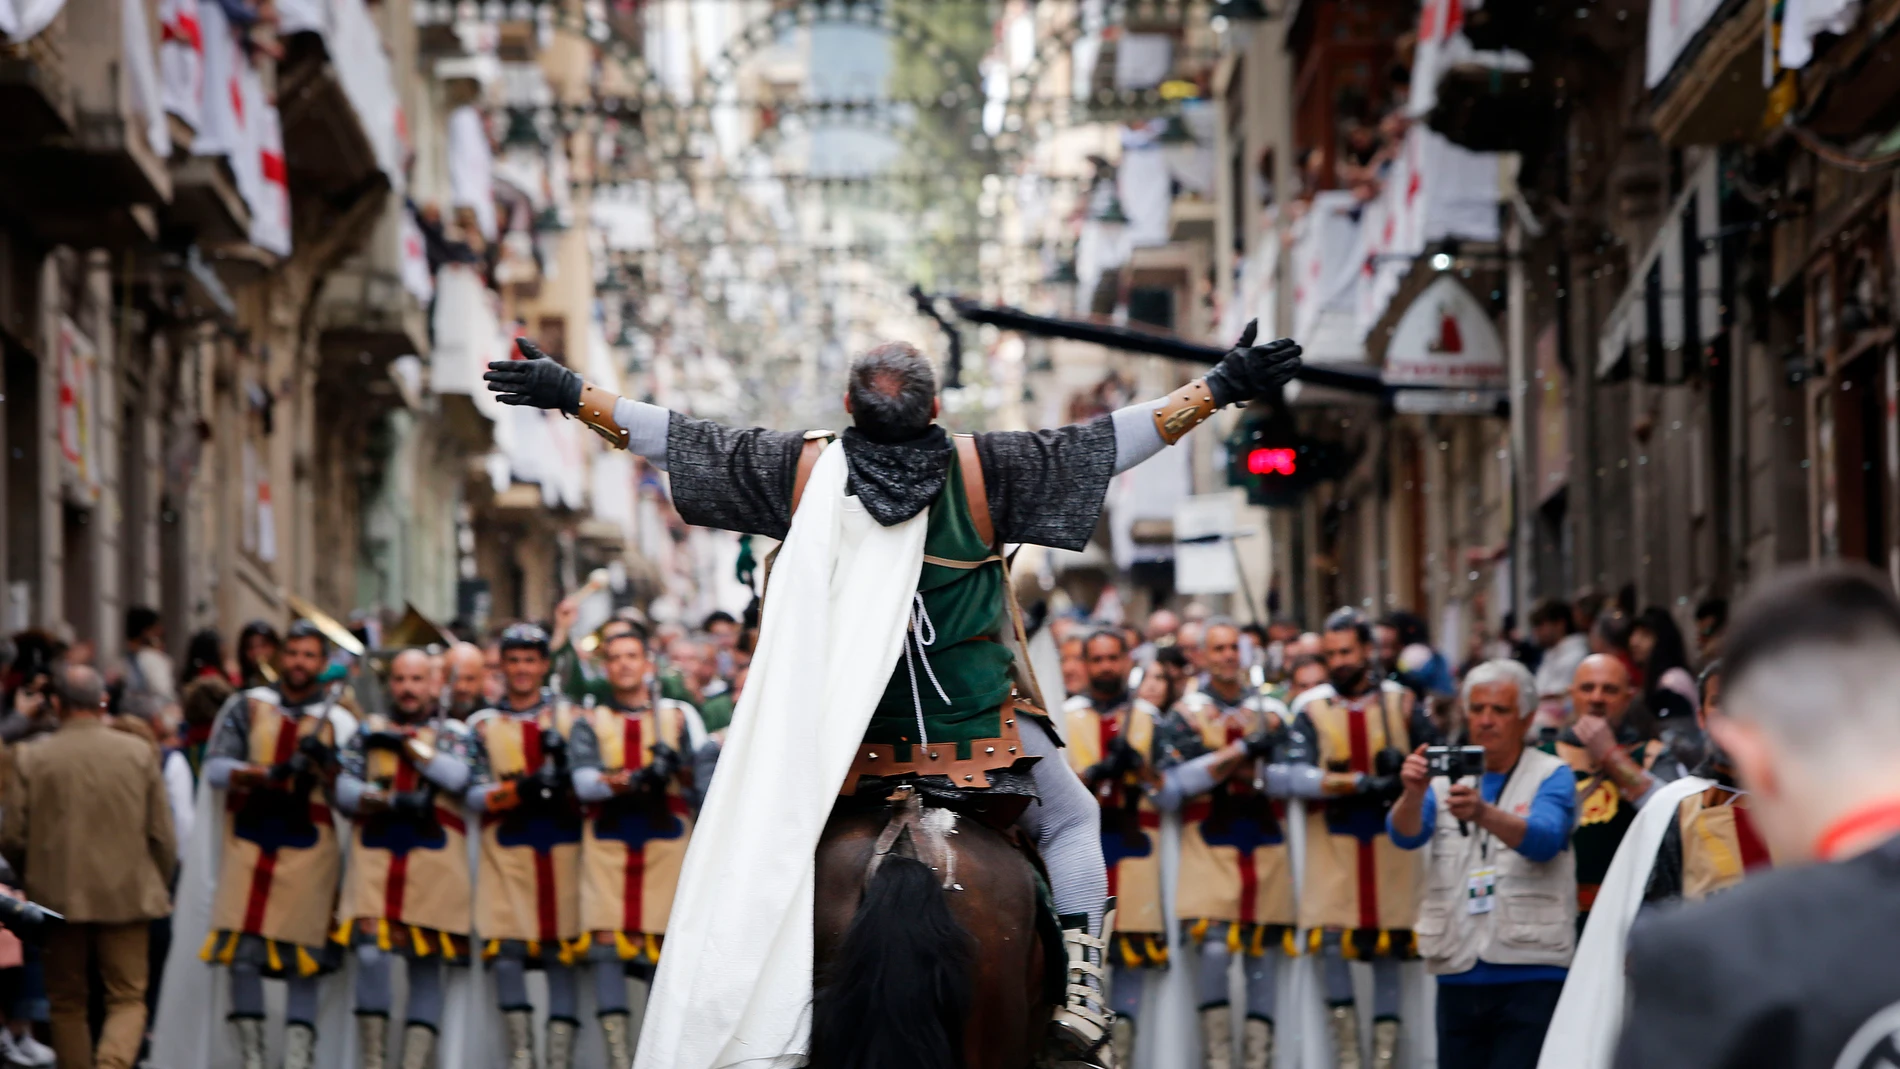 Alcoi da comienzo a la trilogía de los Moros y Cristianos con el desfile de ambas tropas